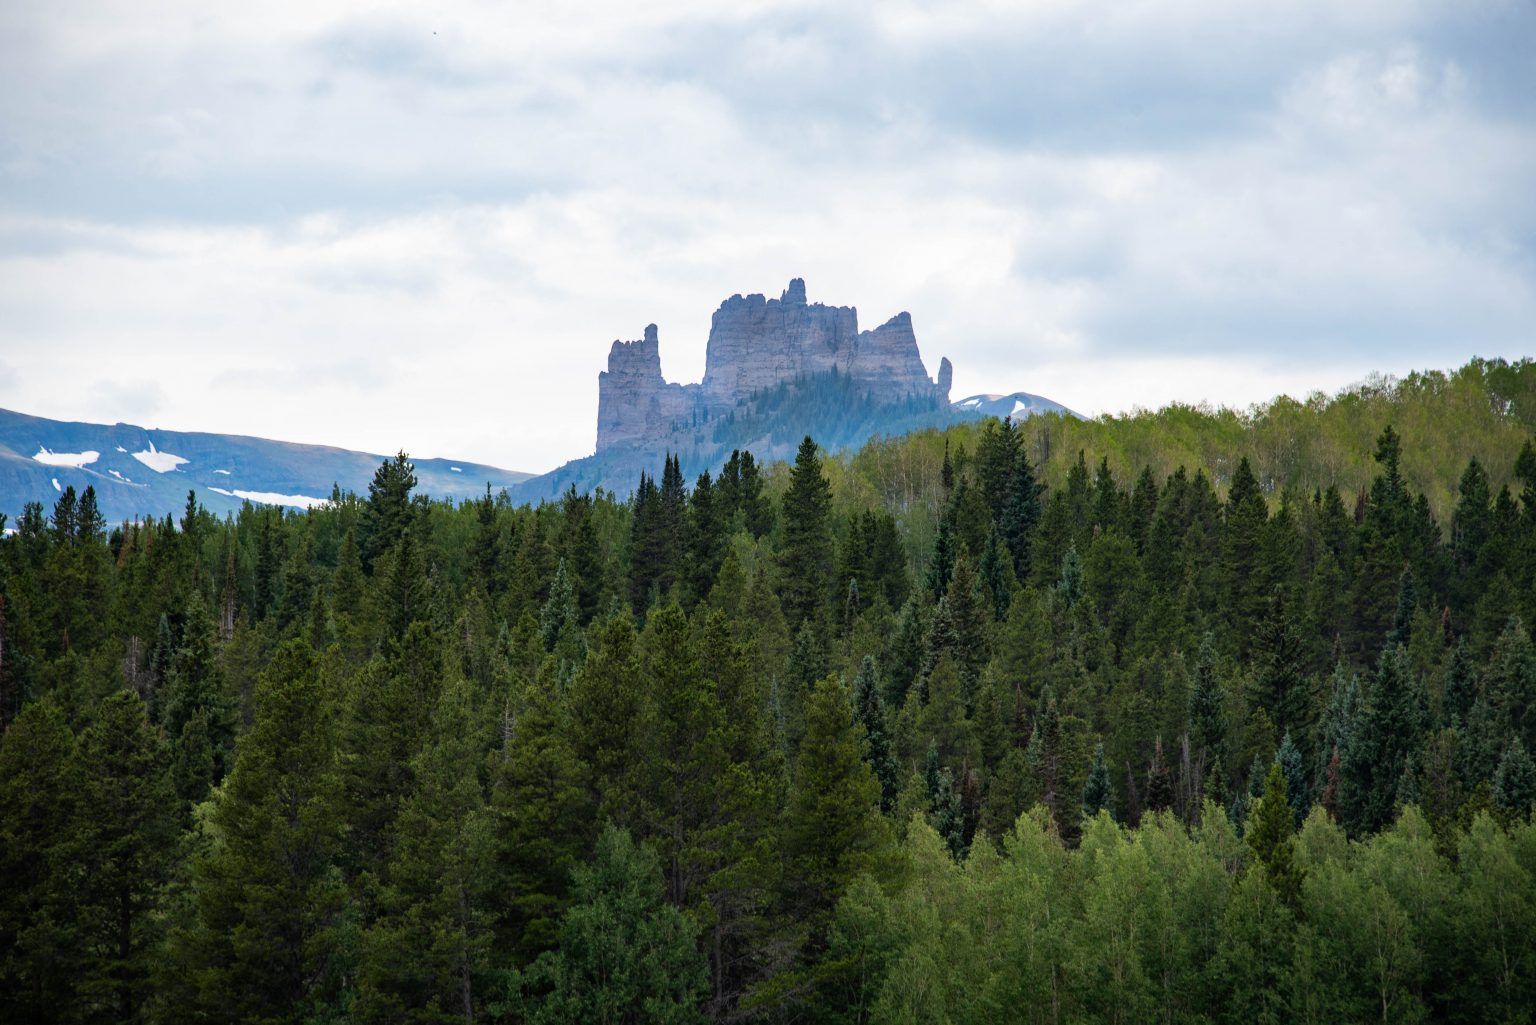 The Castles, Gunnison Colorado